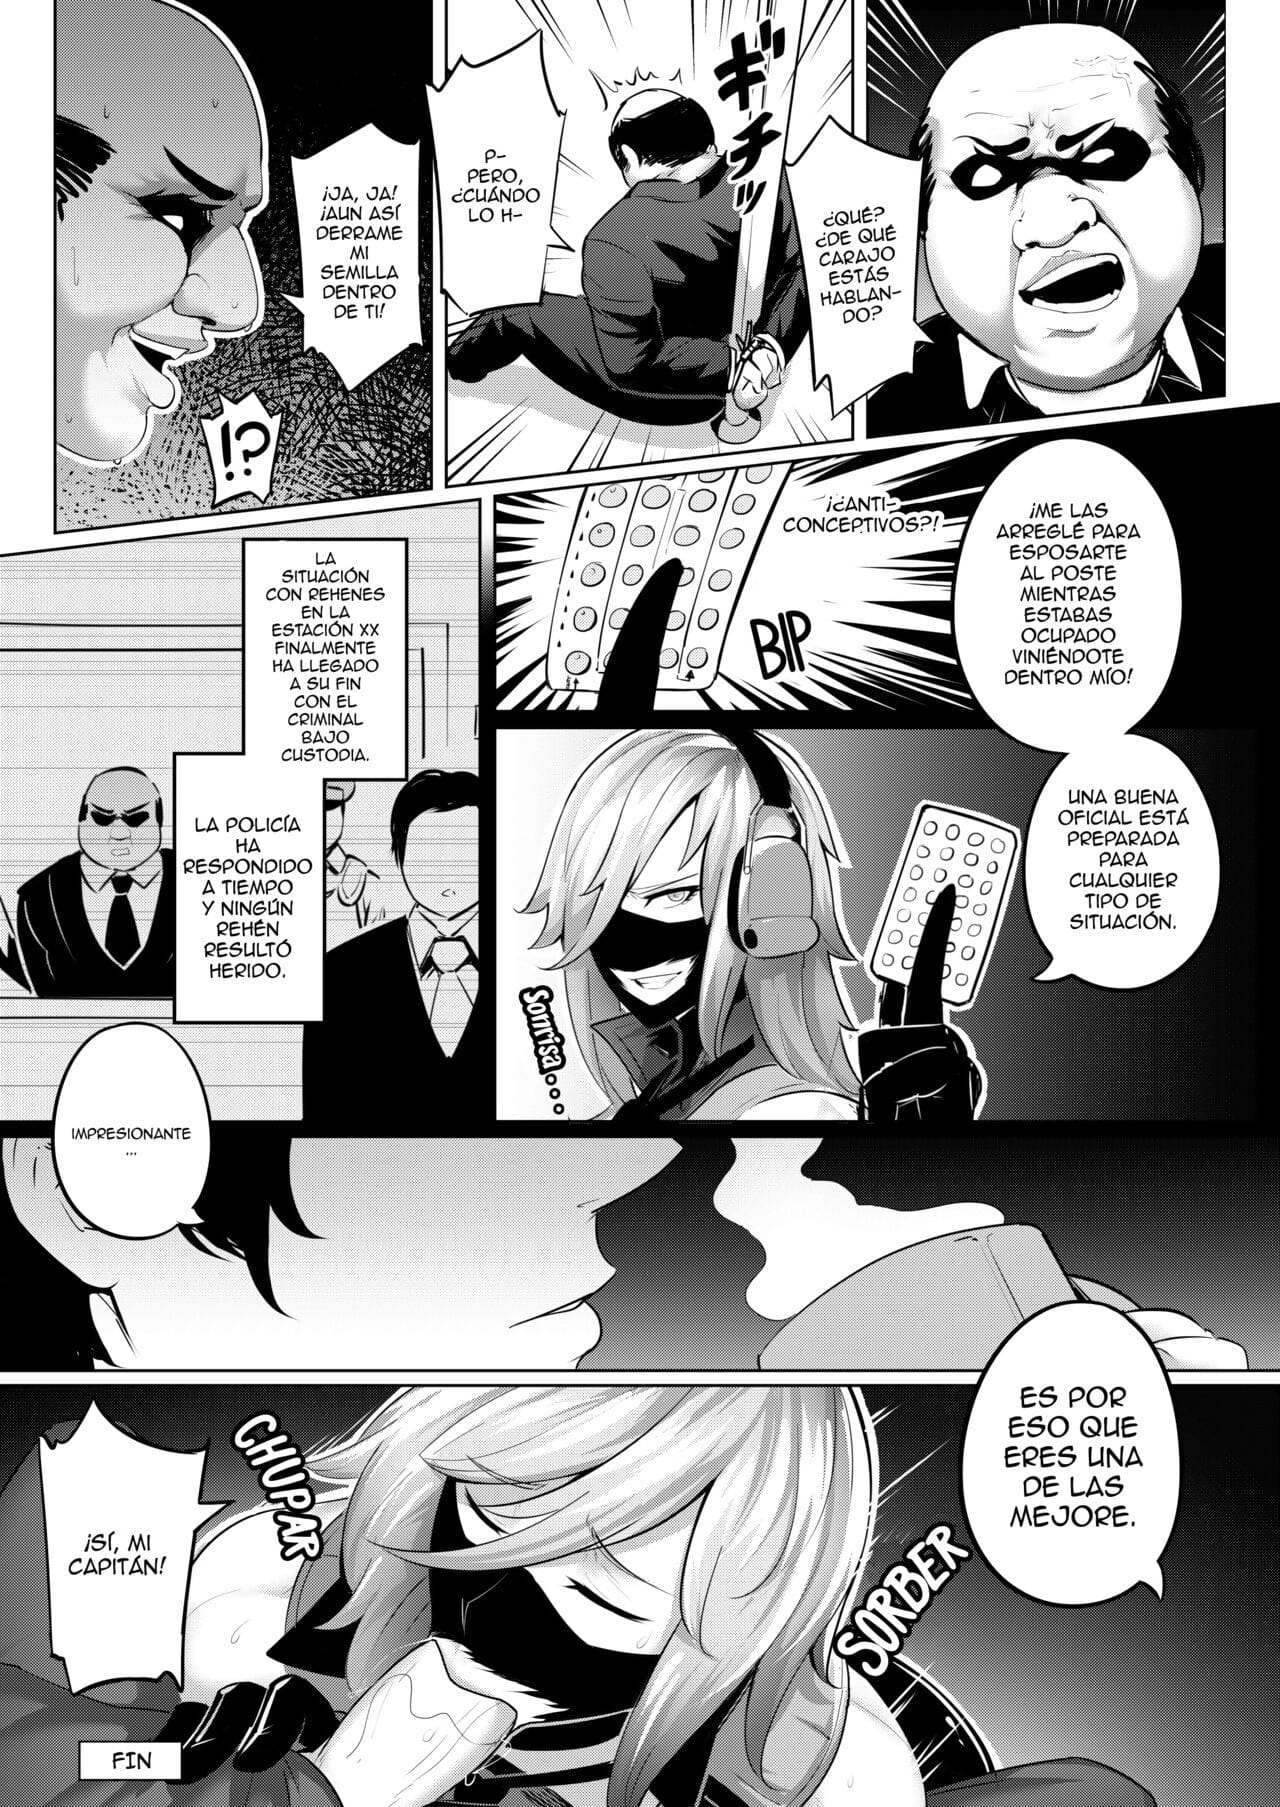 la 最高裁判所 es una esclava obediente page 1